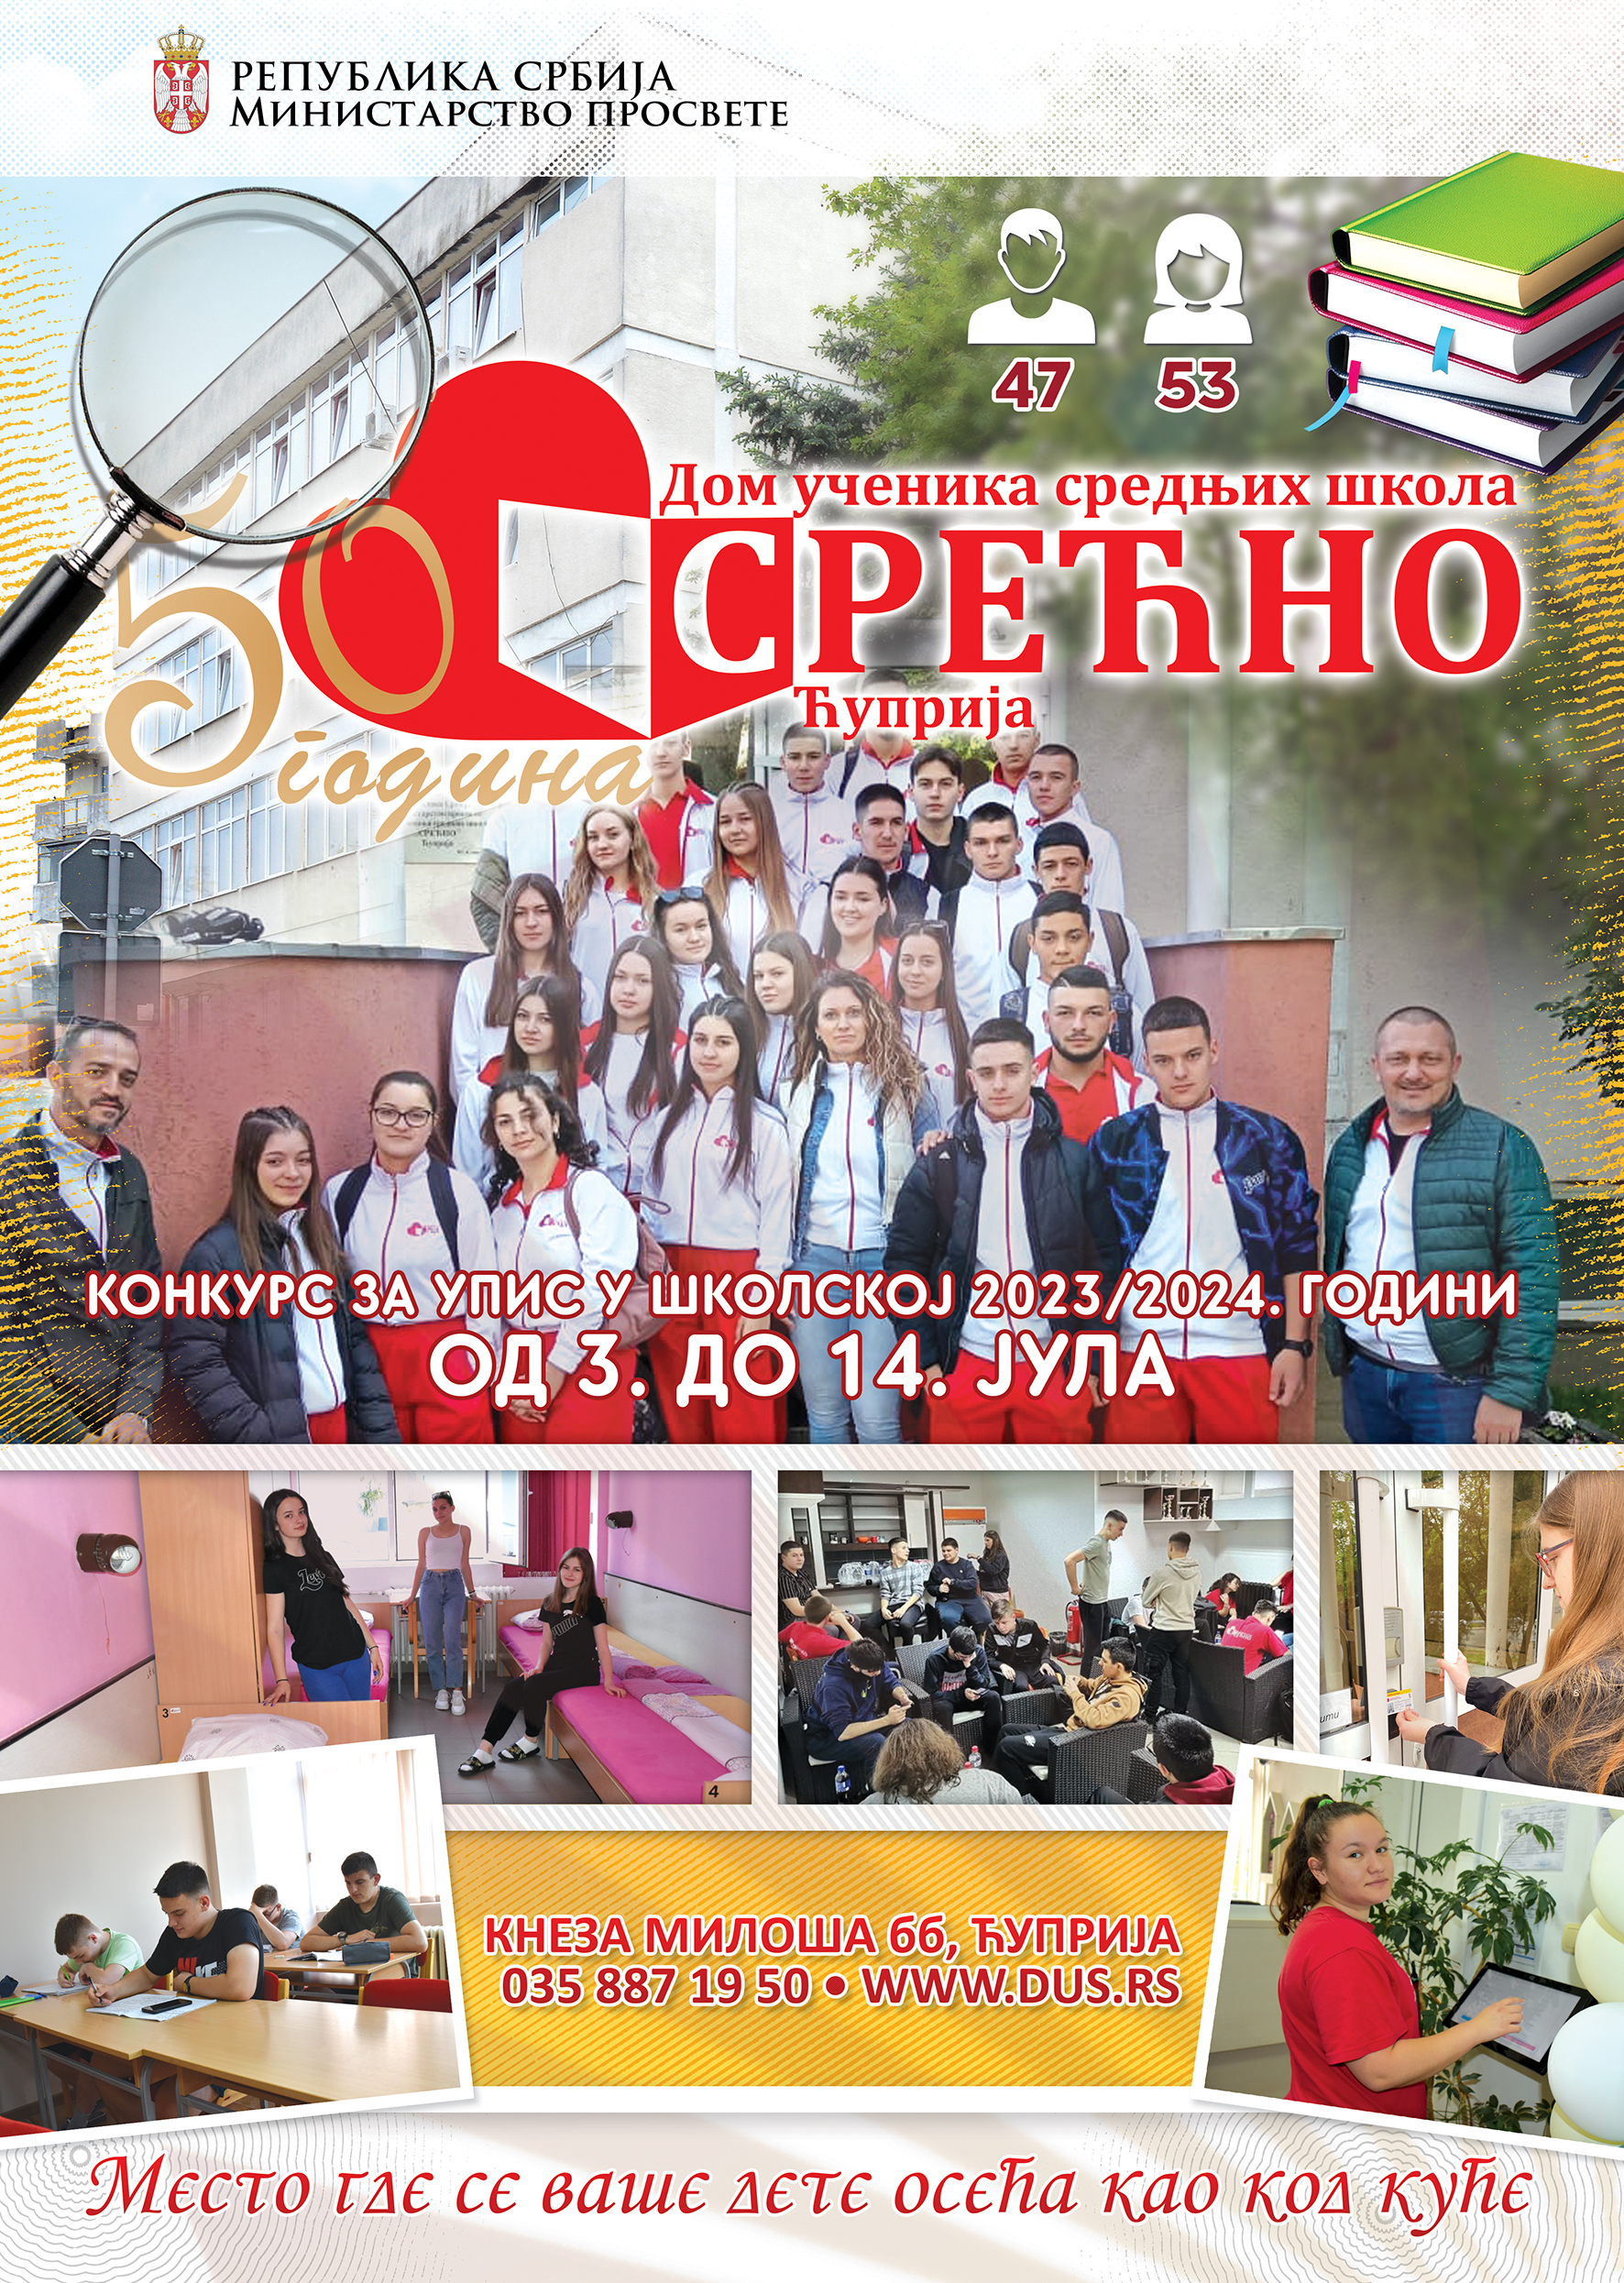 Objavljen konkurs za prijem učenika u dom „Srećno“ u Ćupriji